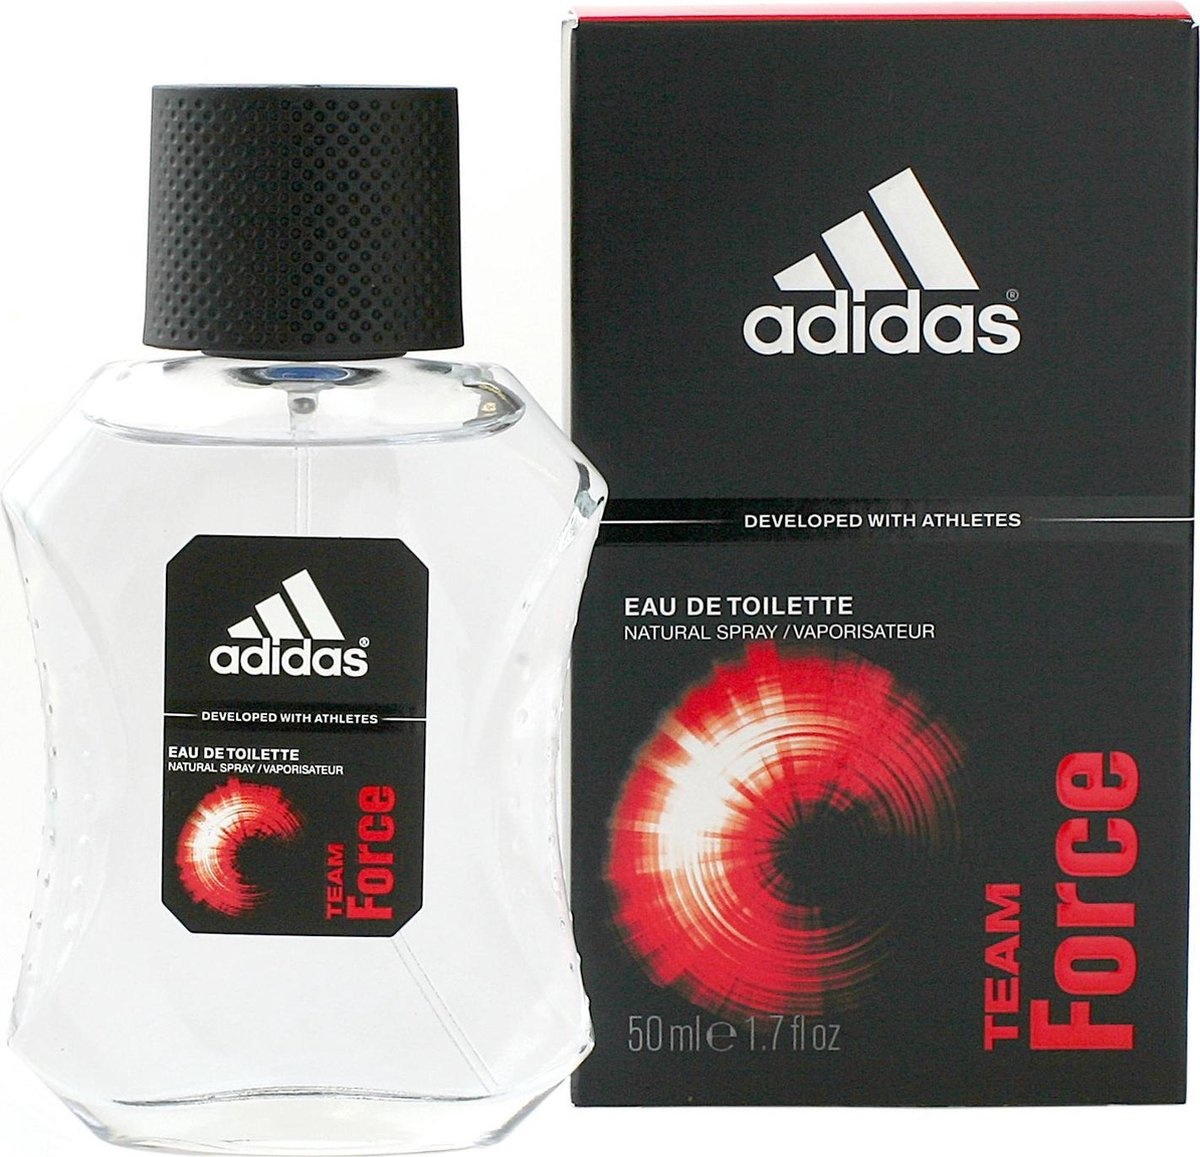 Adidas Team Force for Men - 50 ml - Eau de toilette - Emballage endommagé